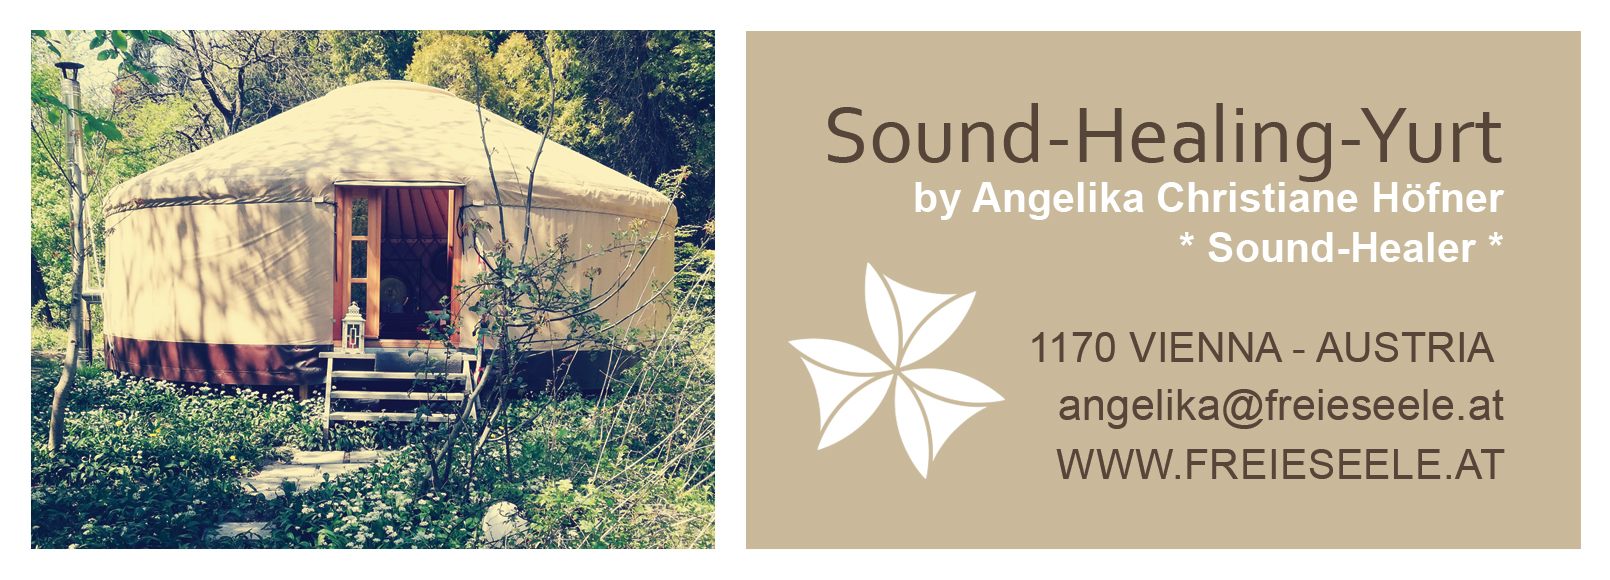 Angelika's Sound-Healing-Yurt - Vienna